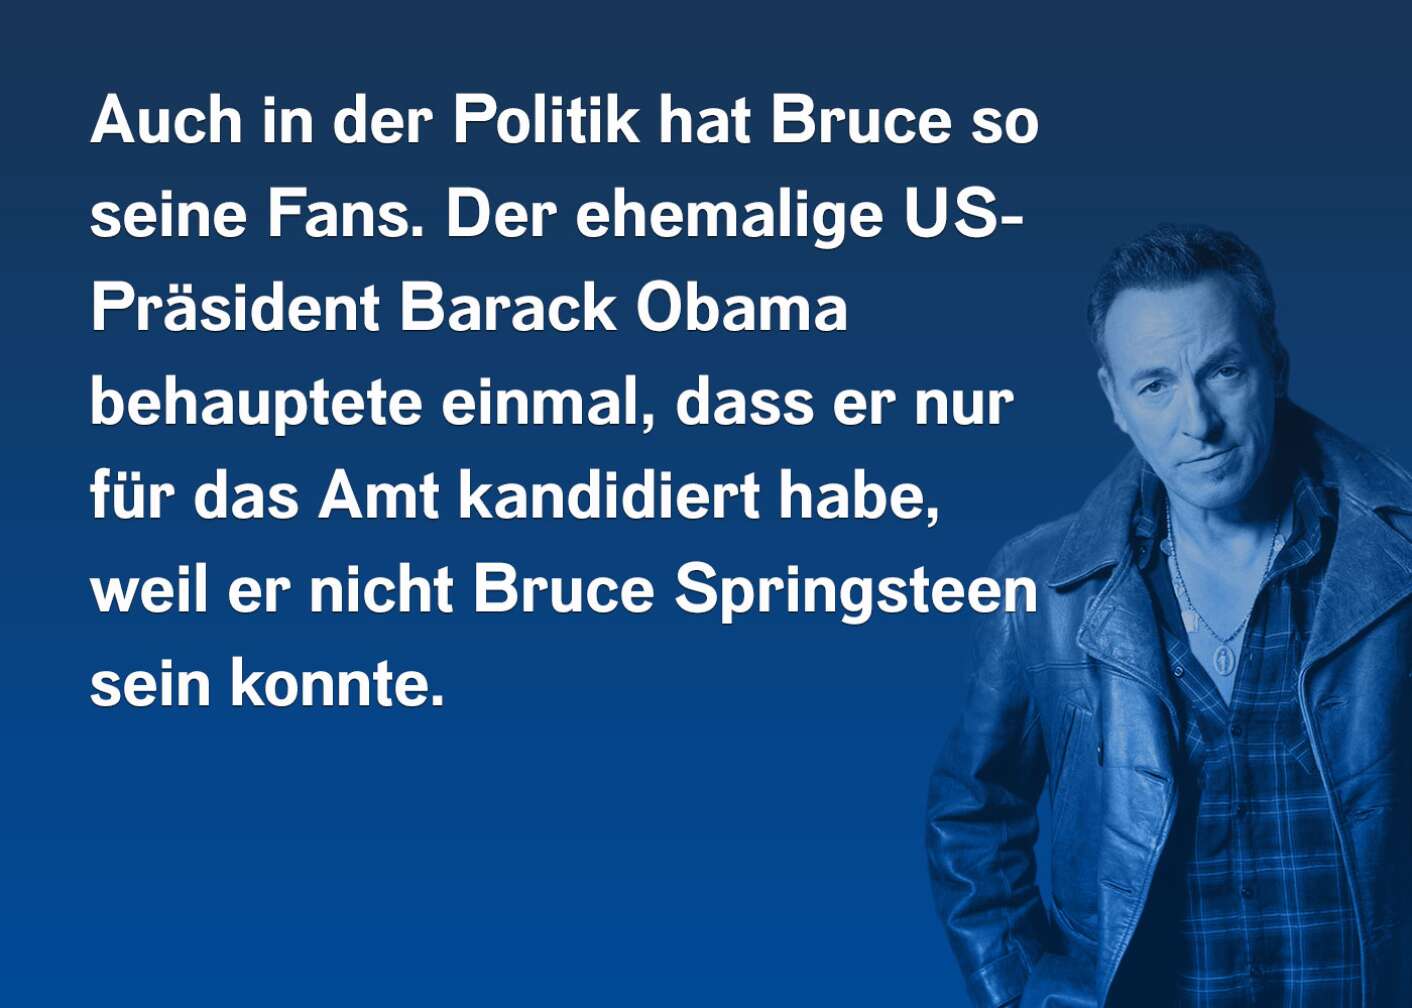 Auch in der Politik hat Bruce so seine Fans. Der ehemalige US-Präsident Barack Obama behauptete einmal, dass er nur für das Amt kandidiert habe, weil er nicht Bruce Springsteen sein konnte.